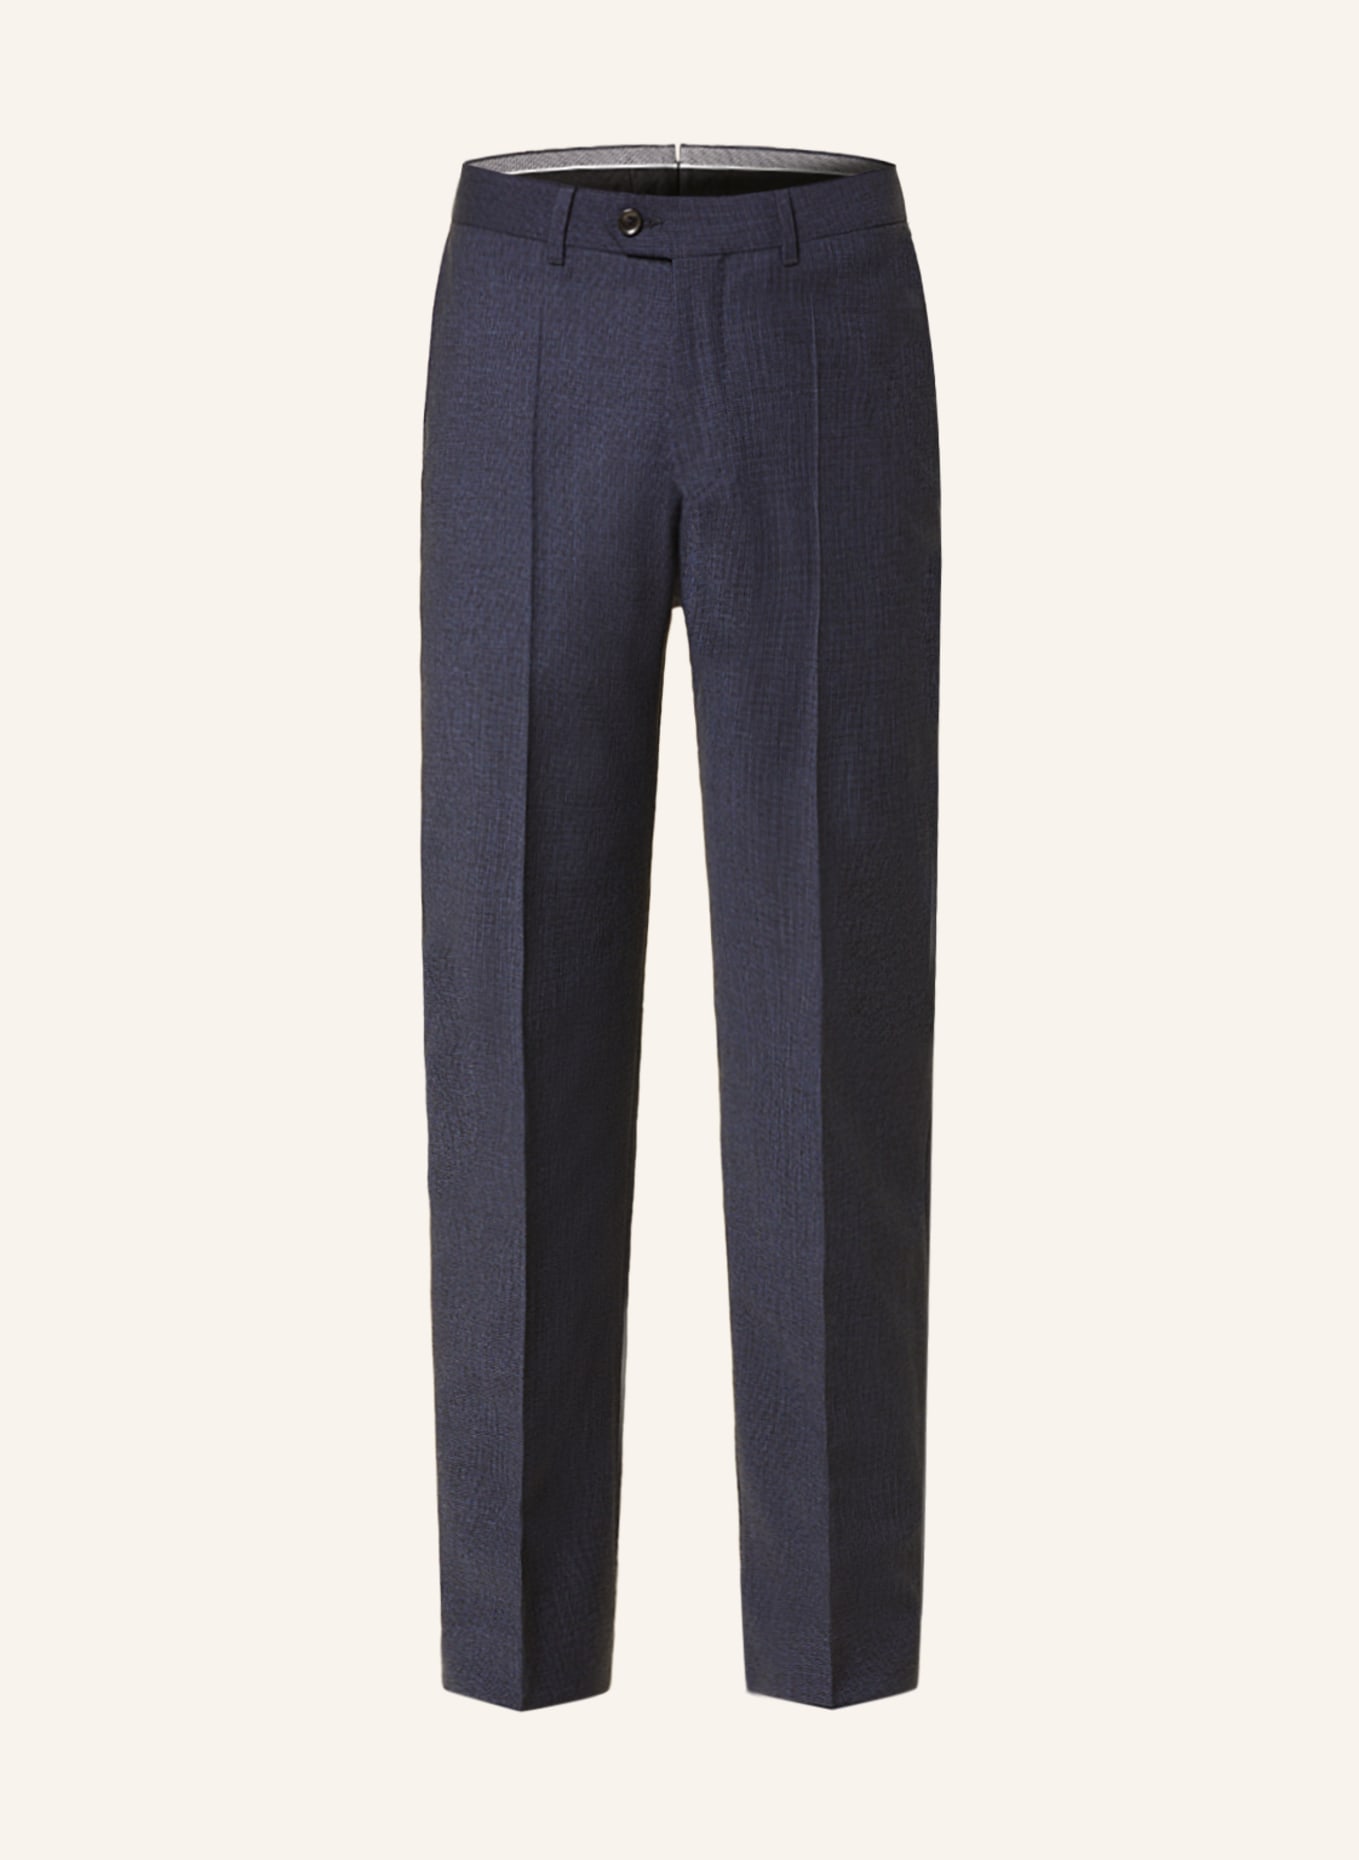 EDUARD DRESSLER Suit trousers shaped fit, Color: 047 DUNKELBLAU (Image 1)